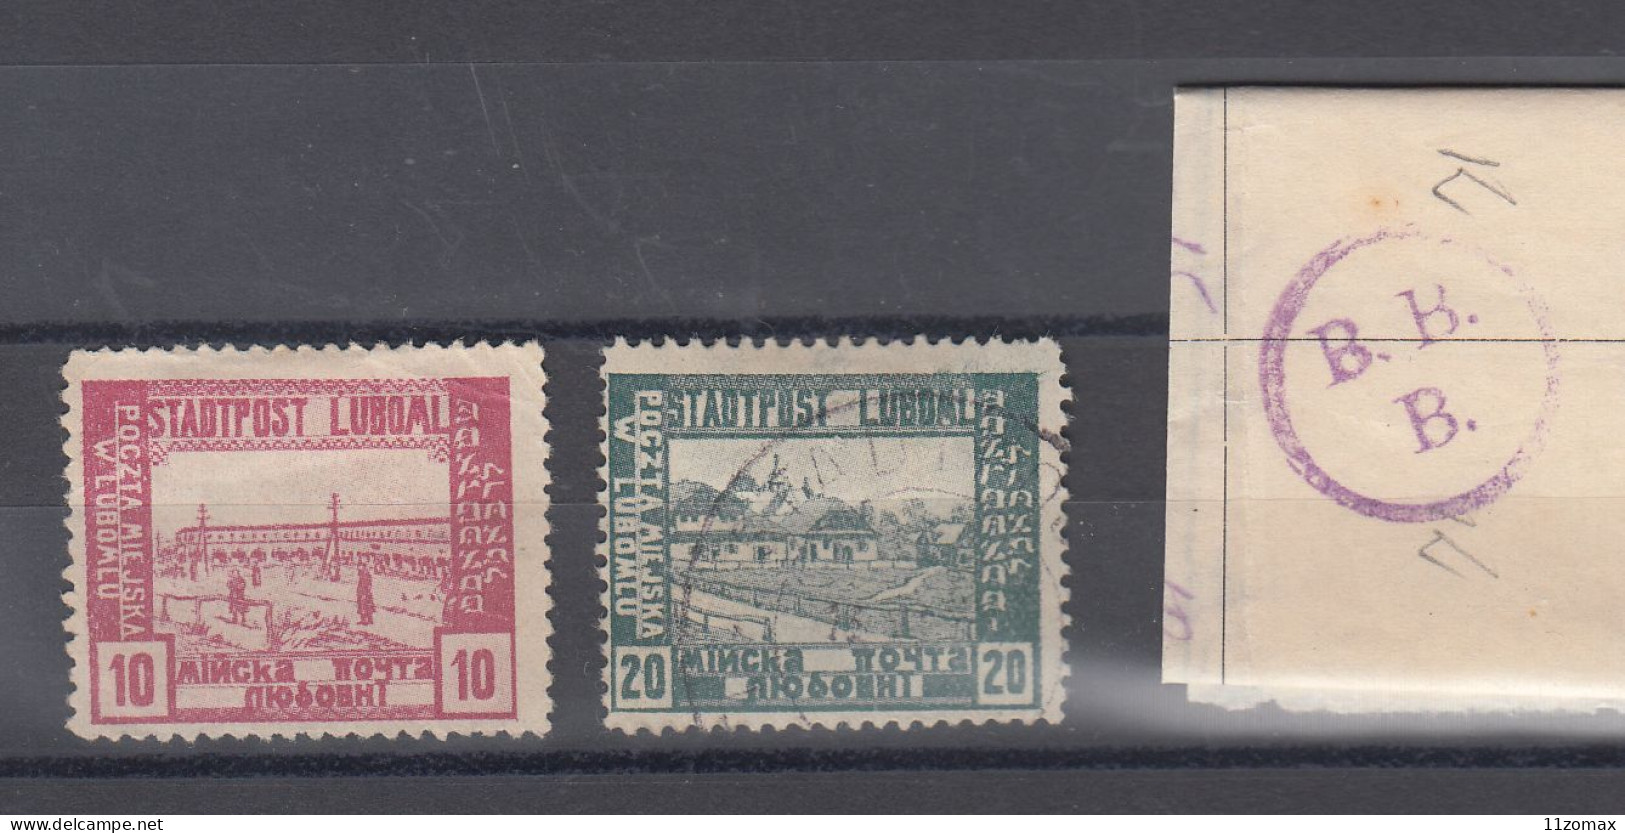 LUBOML LYUBOML Ukraina Now 1918. Lot Of 2 Stamps - VIPauction001 - Neufs